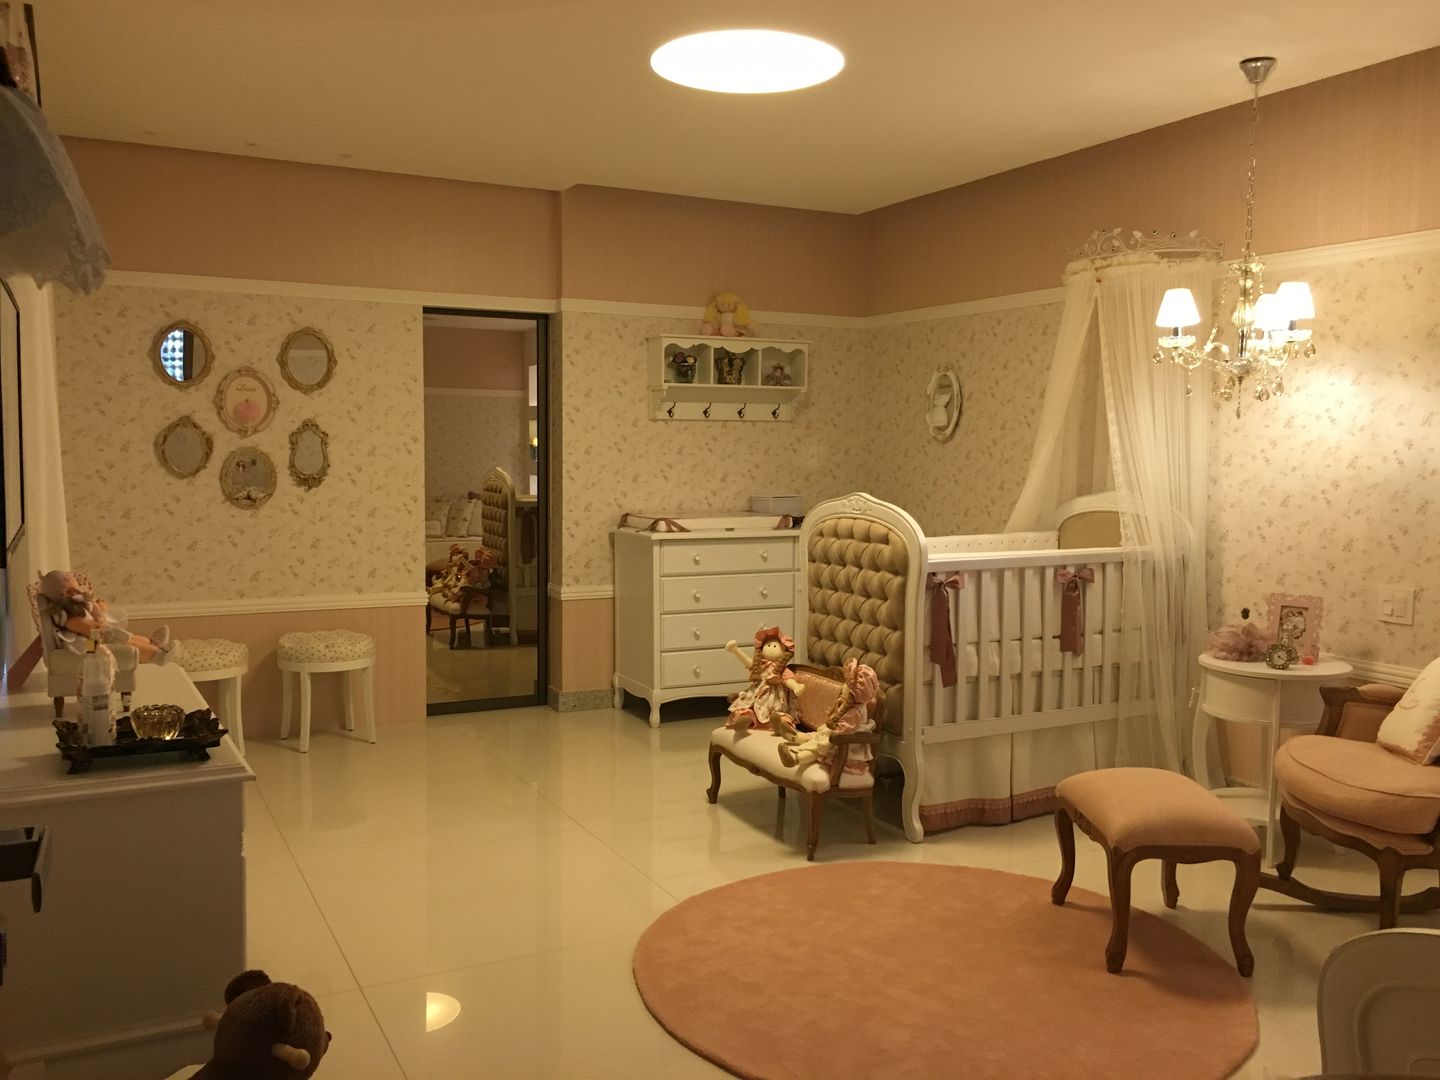 Quarto de bebê Heloisa Titan Arquitetura Quarto infantil clássico Papel quarto de Bebê,Camas e berços